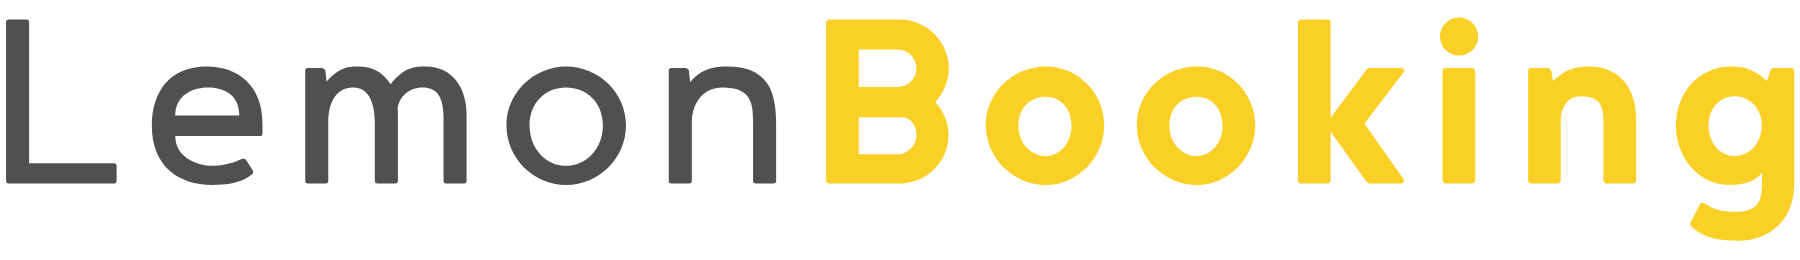 LemonBooking logo